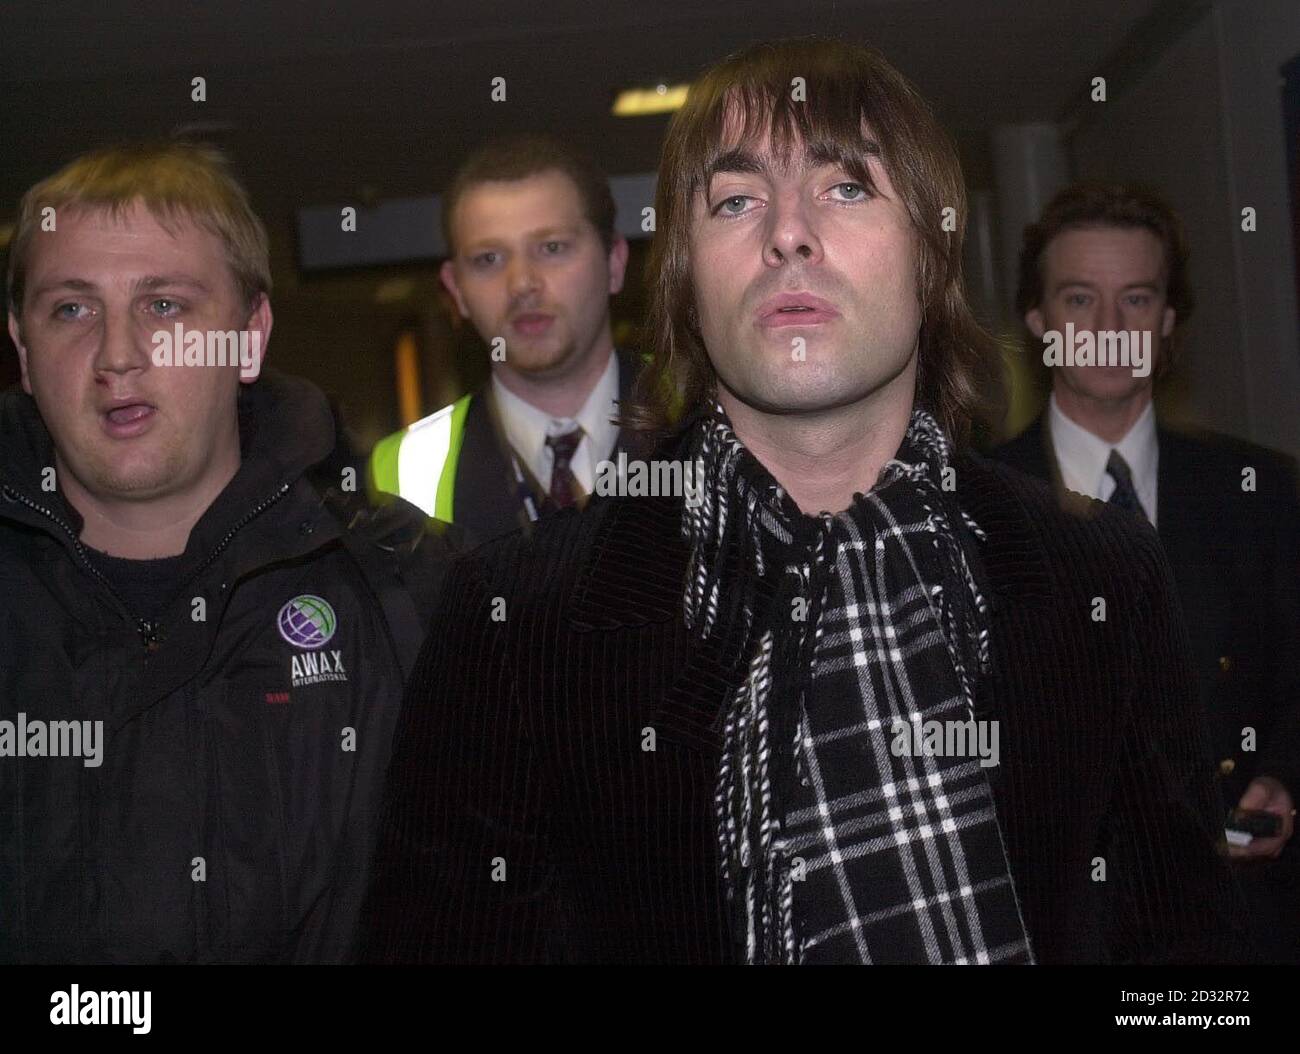 La stella dell'Oasis Liam Gallagher ritorna nel Regno Unito all'aeroporto di Heathrow. Gallagher avrebbe assalito un poliziotto tedesco in un busto-up in un elegante hotel di Monaco. La rock star, che ha perso i suoi due denti anteriori nel giro dei bar, potrebbe affrontare fino a due anni di prigione. Foto Stock